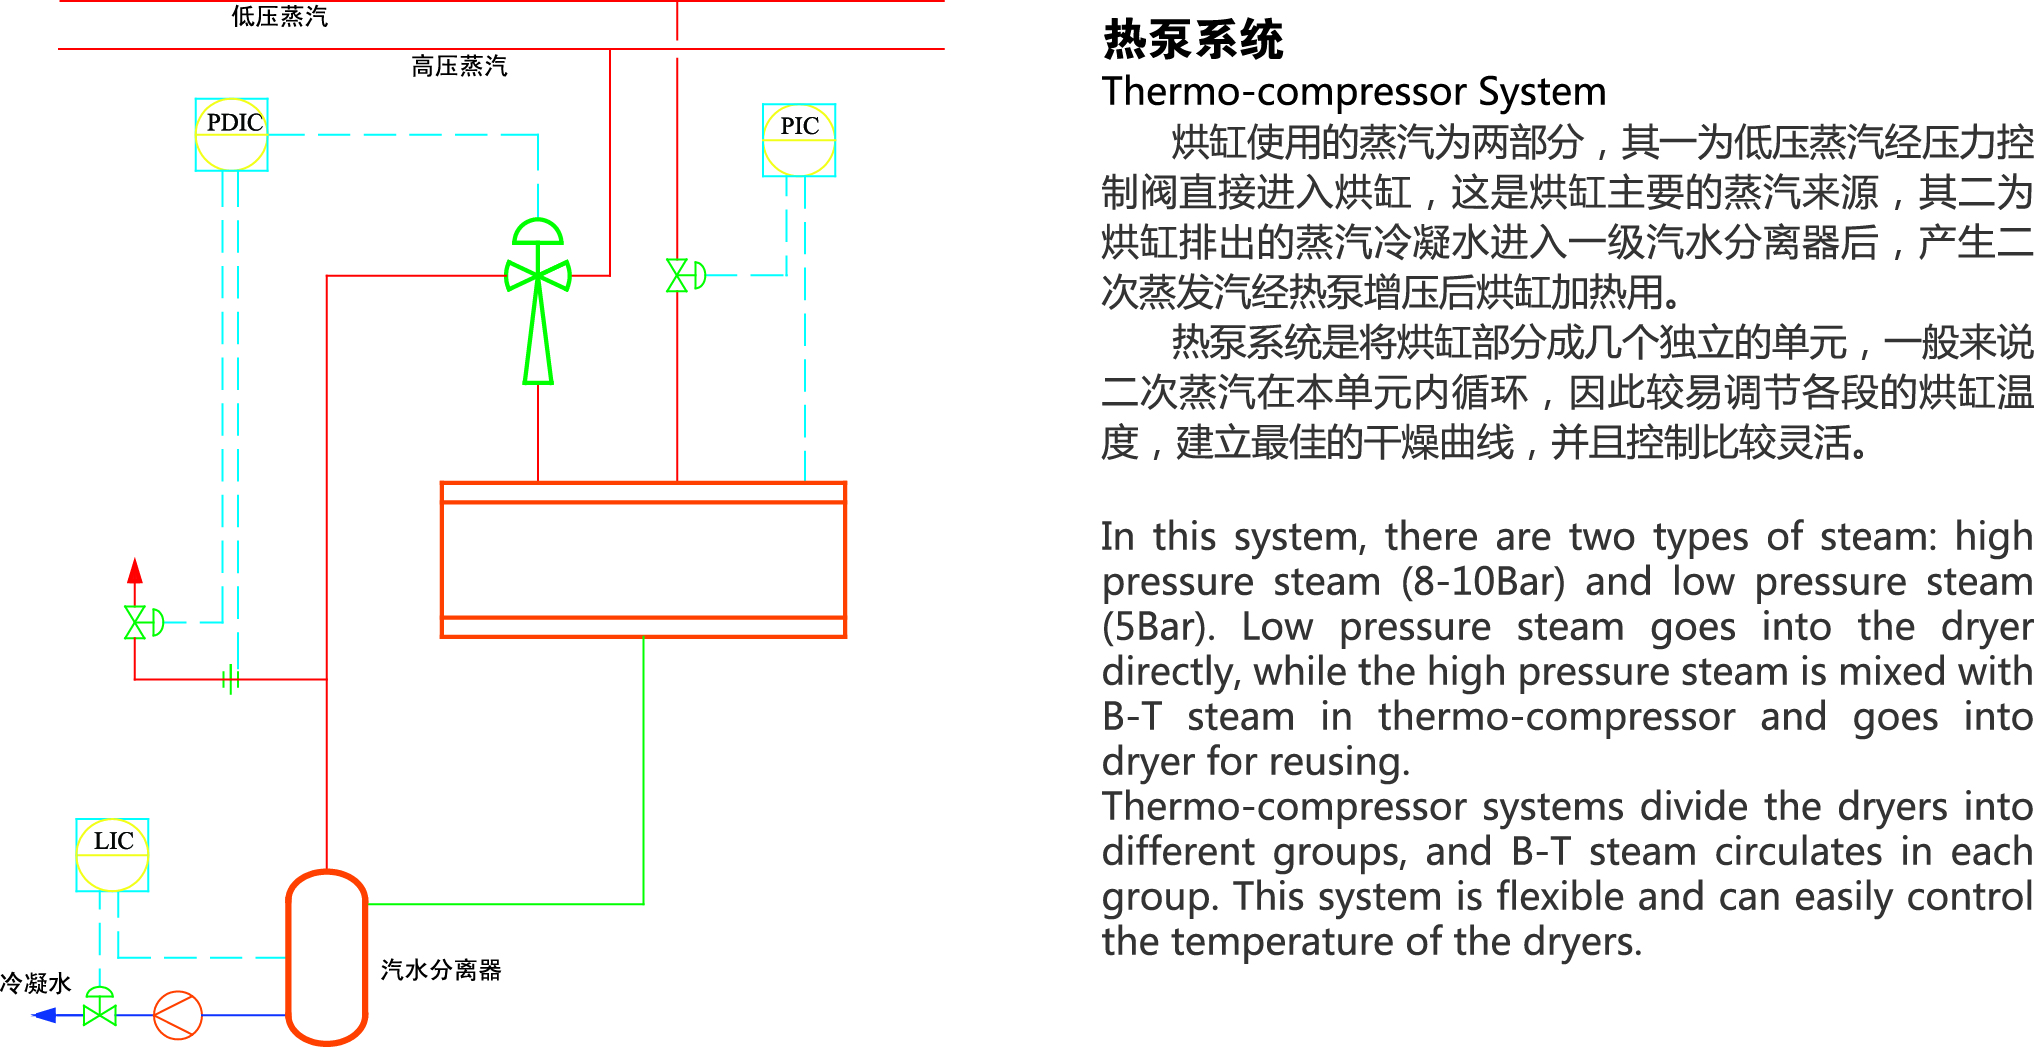 熱泵系統